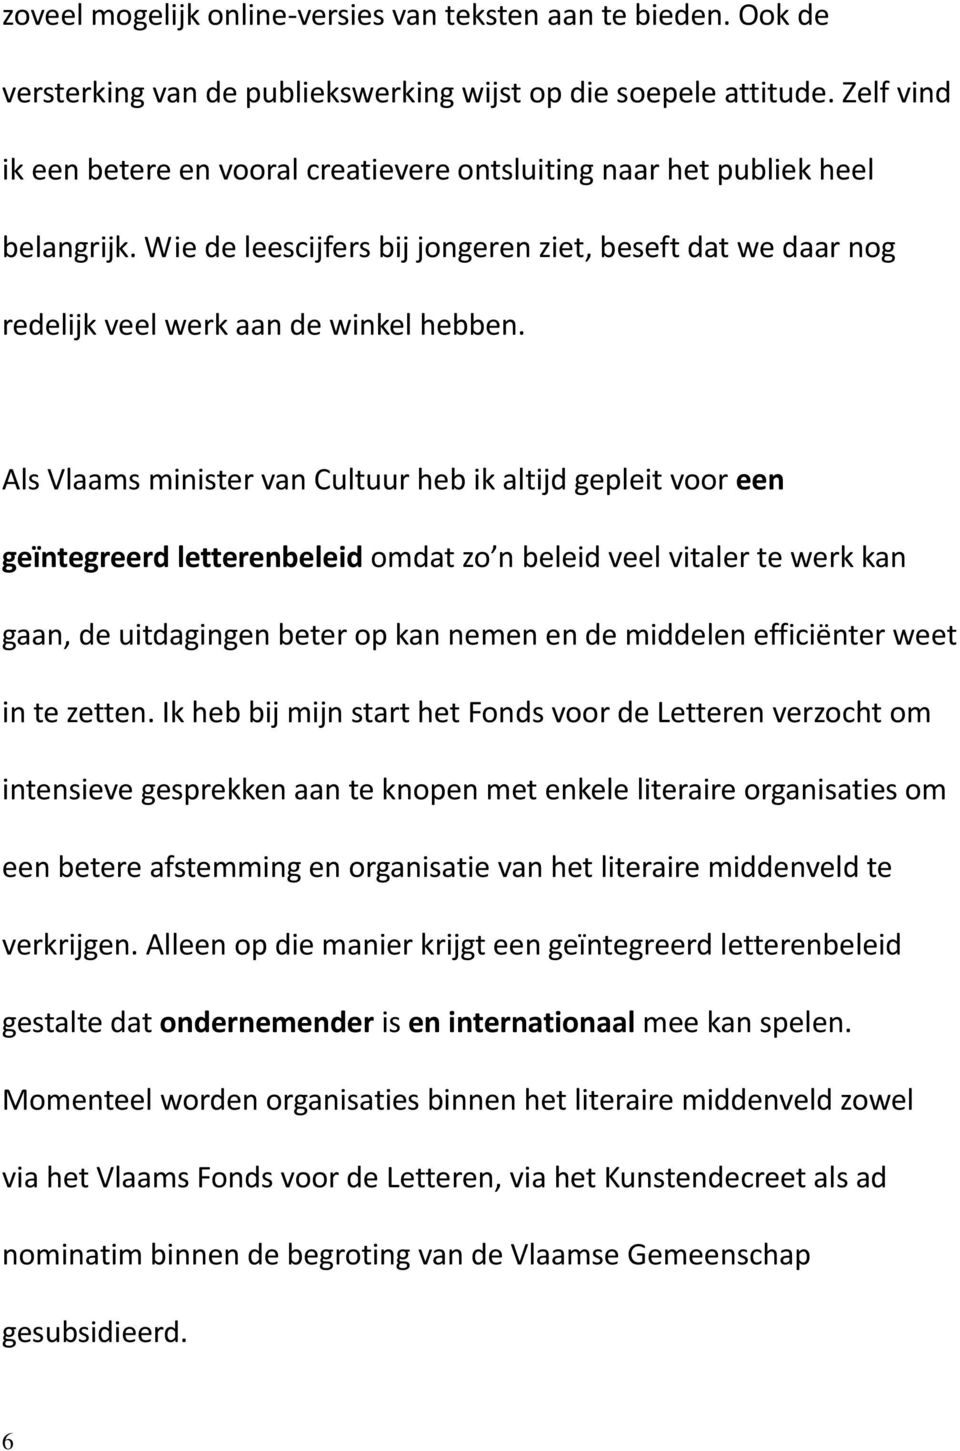 Als Vlaams minister van Cultuur heb ik altijd gepleit voor een geïntegreerd letterenbeleid omdat zo n beleid veel vitaler te werk kan gaan, de uitdagingen beter op kan nemen en de middelen